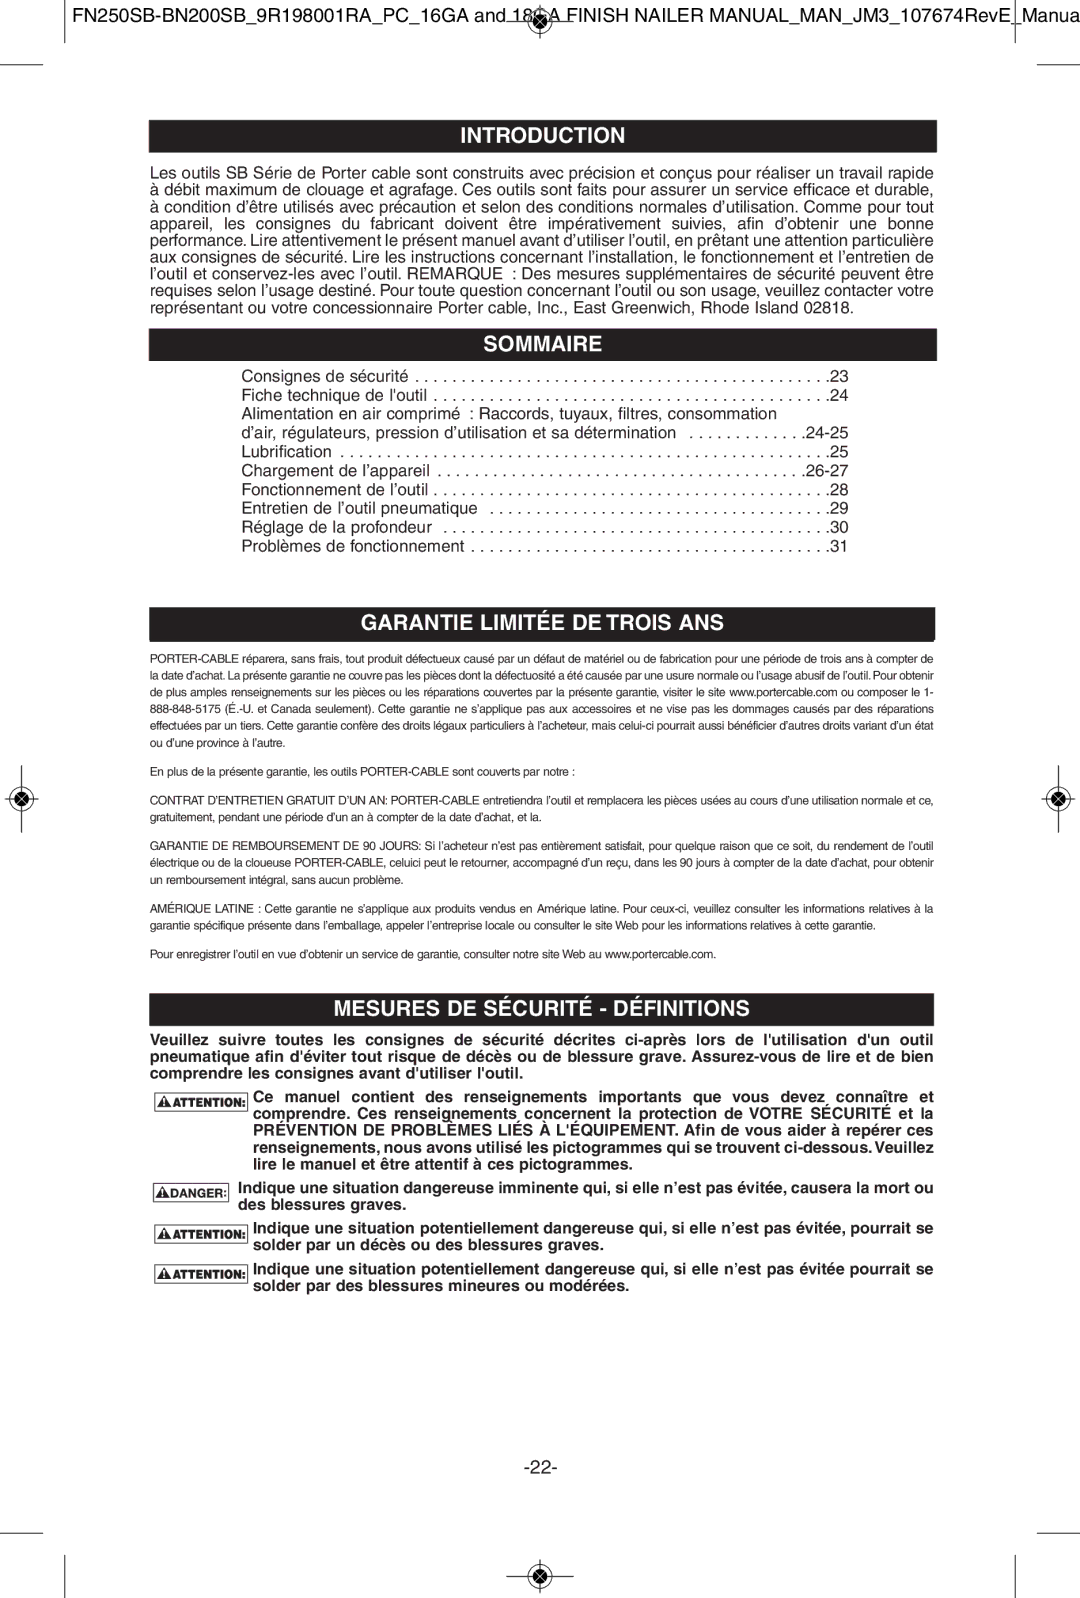 Porter-Cable FN250SB, BN200SB Introduction Introduction, Sommairesommaire, Mesures DE Sécurité Définitions 